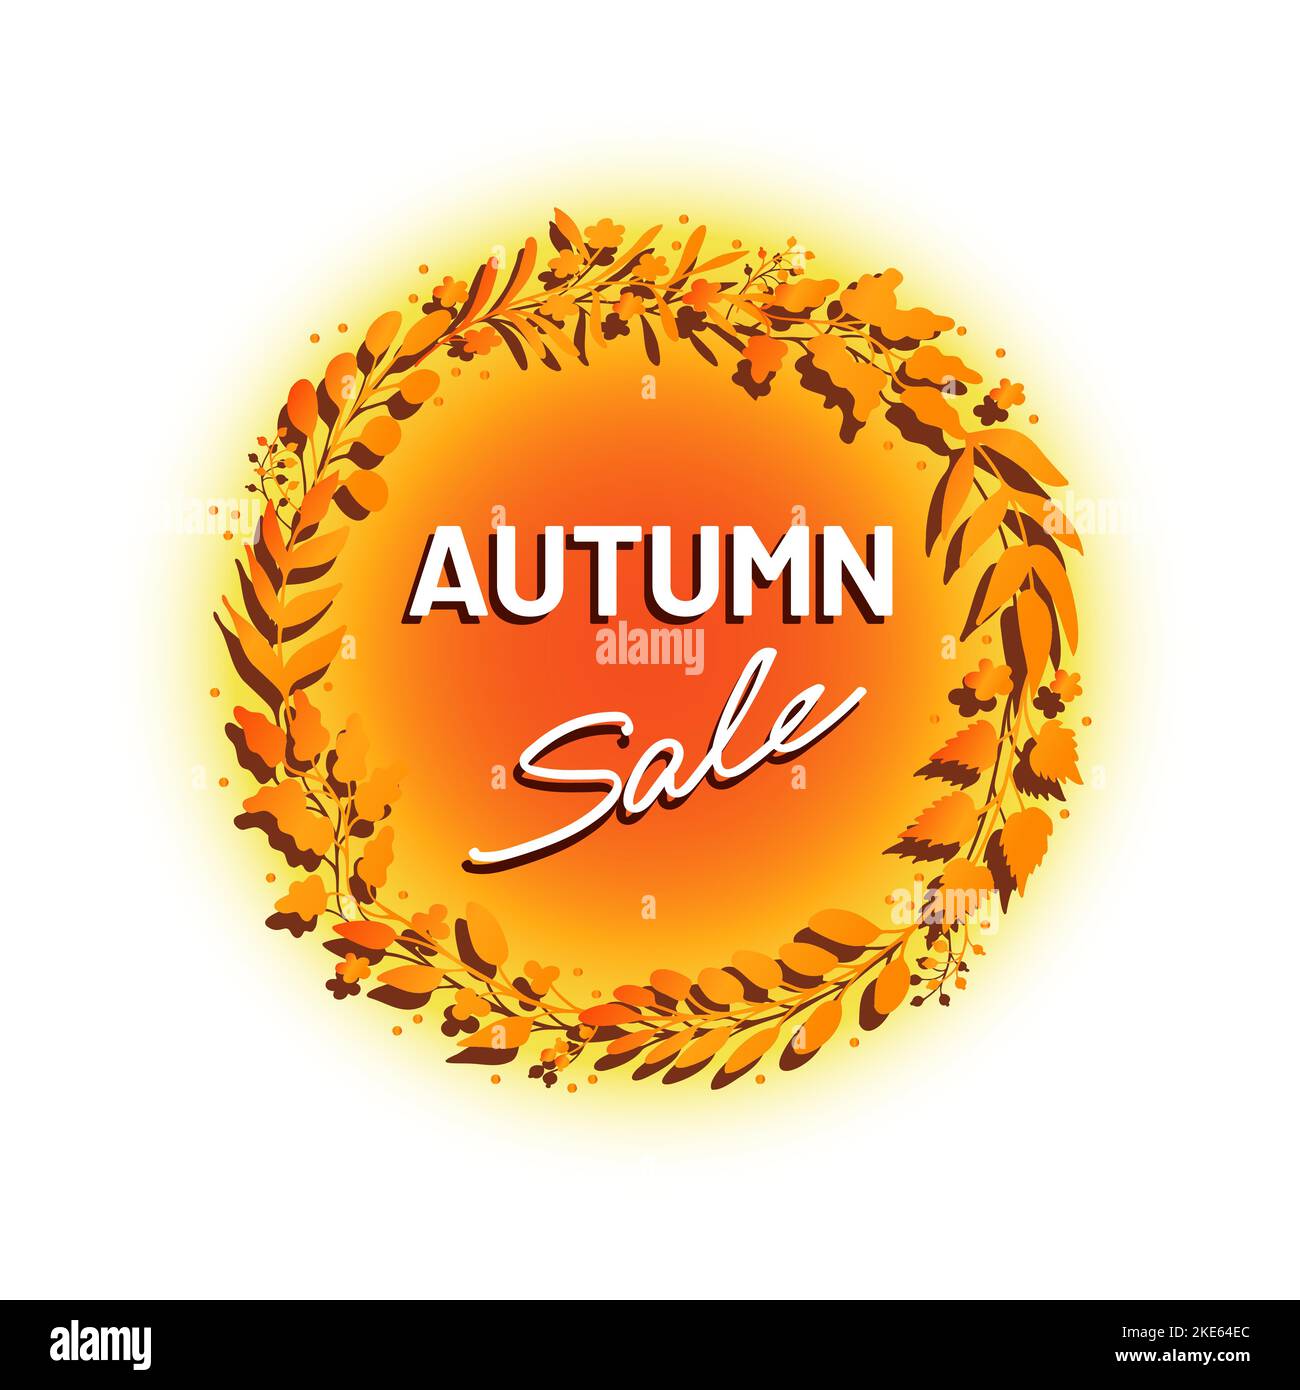 Annonce ou étiquette de solde d'automne, couronne de feuilles dorées Illustration de Vecteur